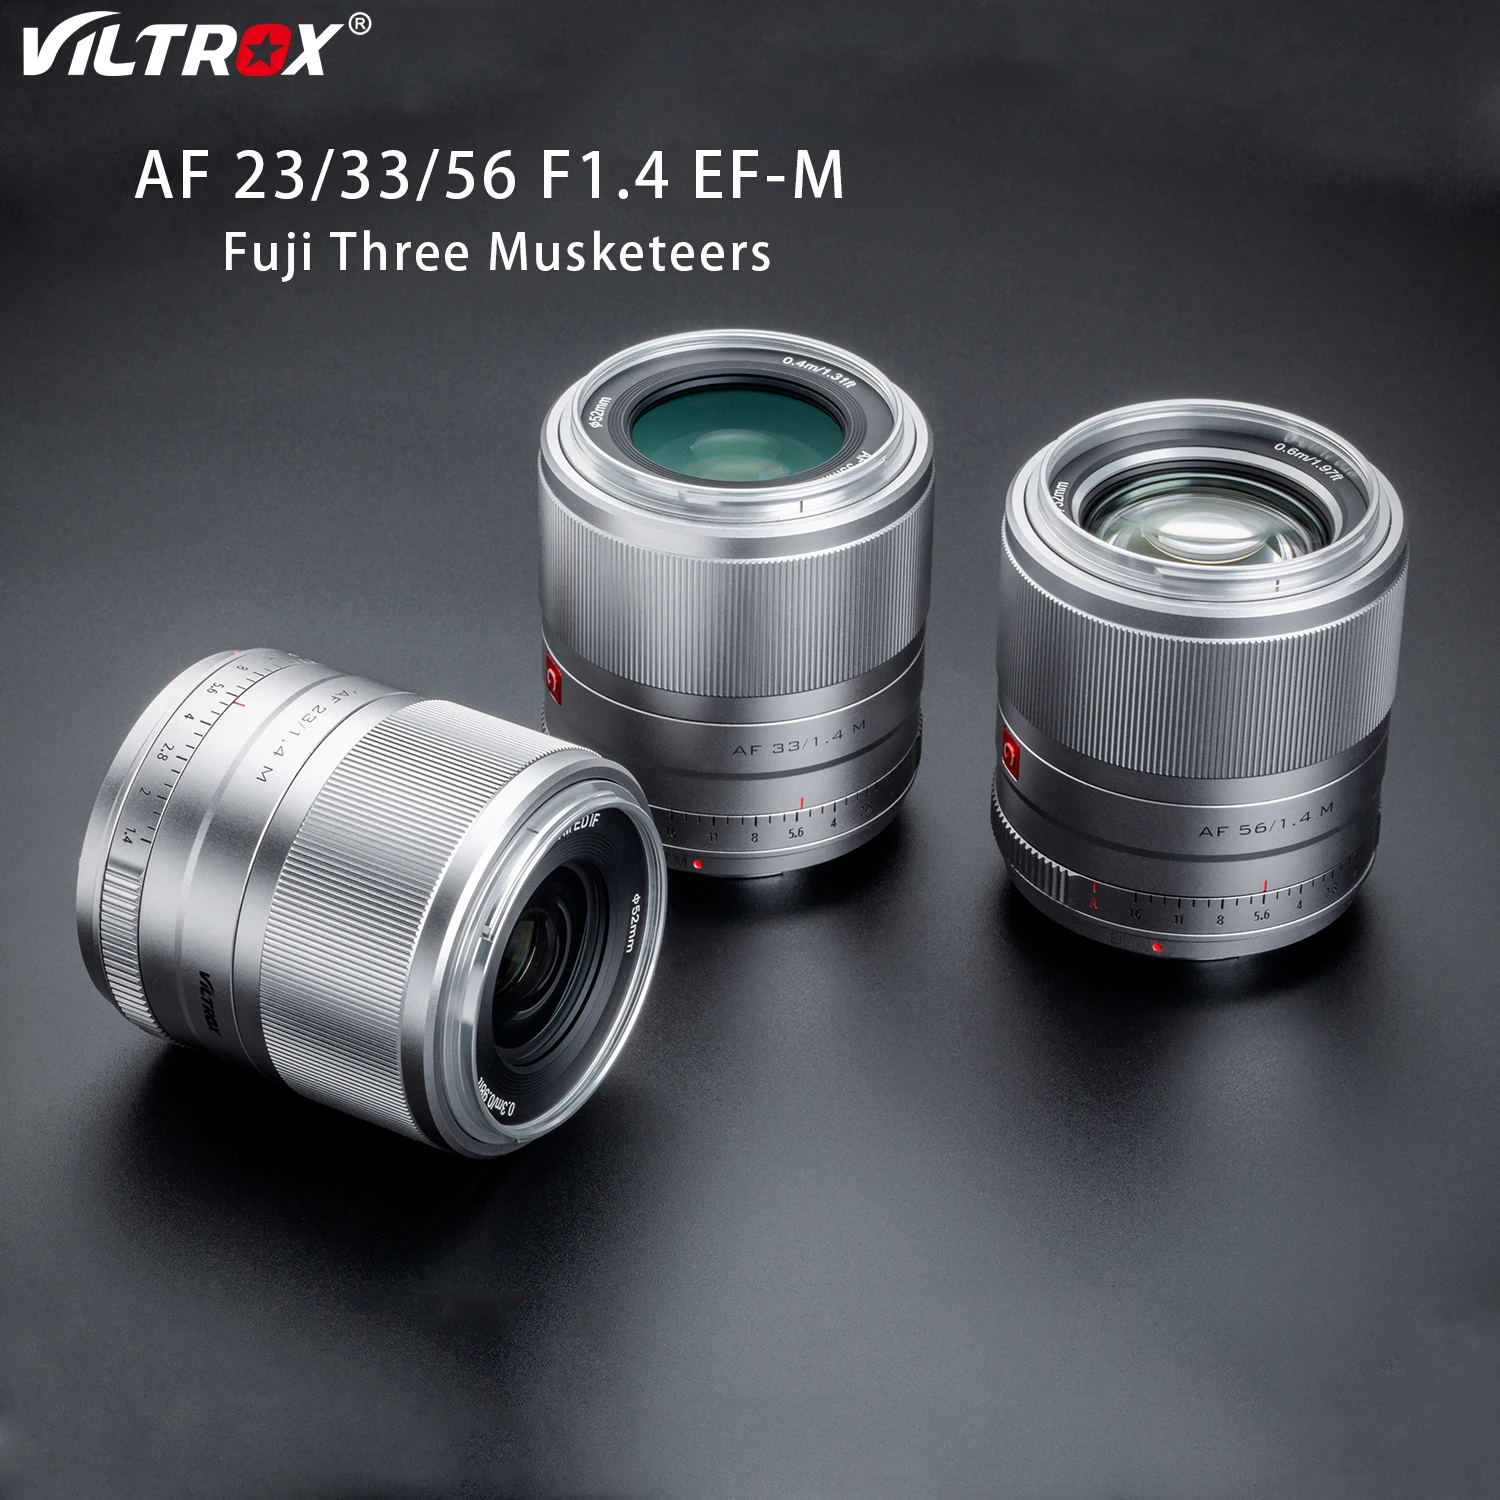 

Viltrox 23/33/56 мм f1.4 фотообъектив с большой диафрагмой и автофокусом